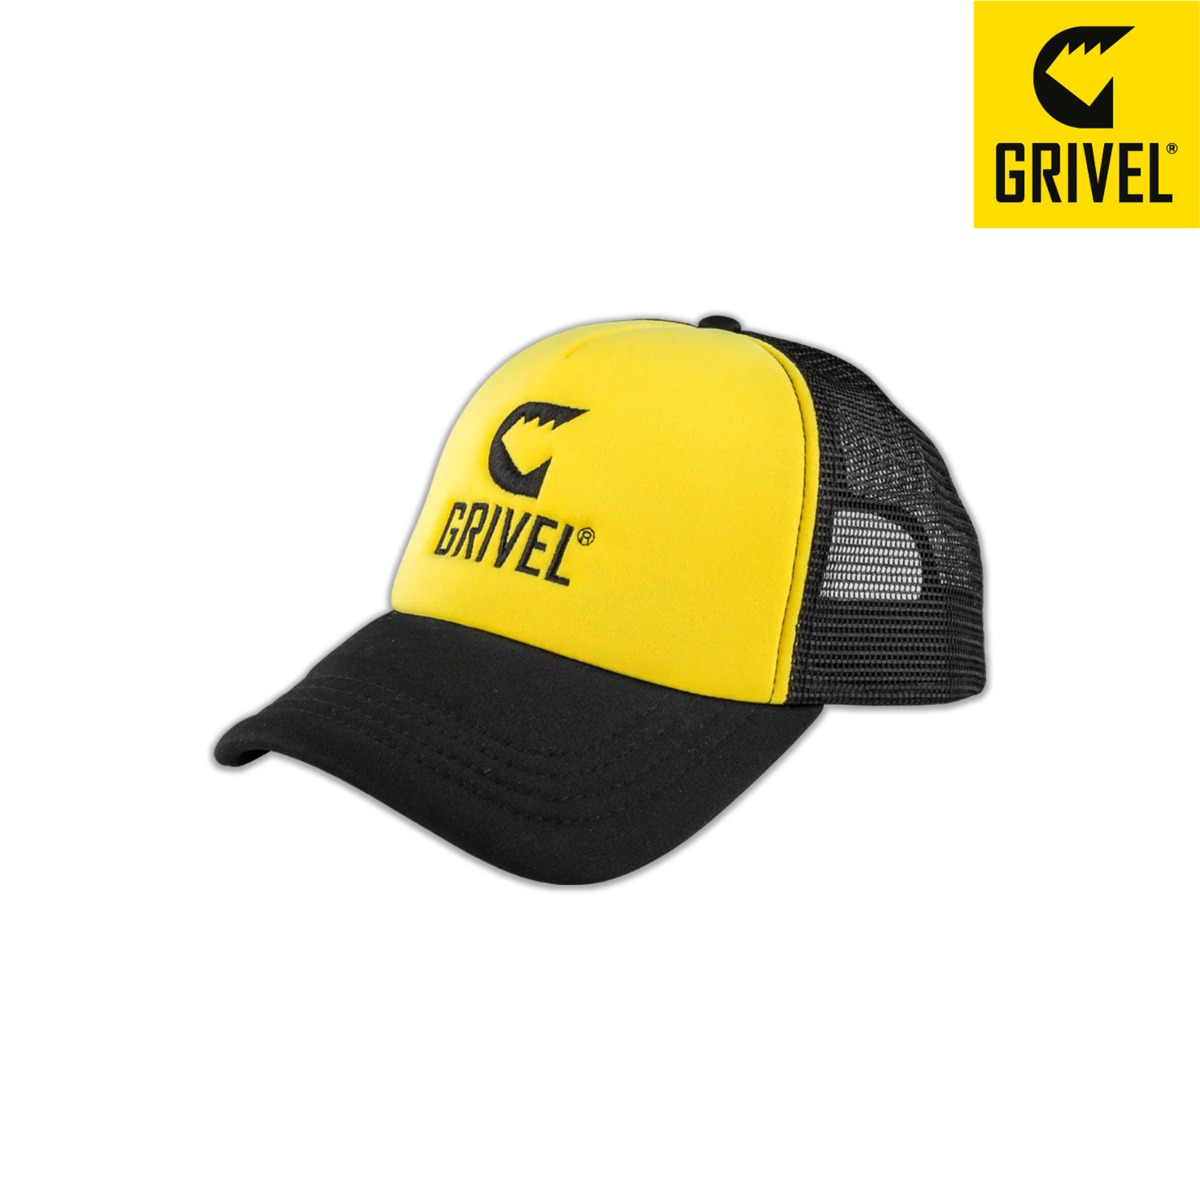 그리벨 트러커 캡 캡 모자 GRIVEL TRUCKER CAP